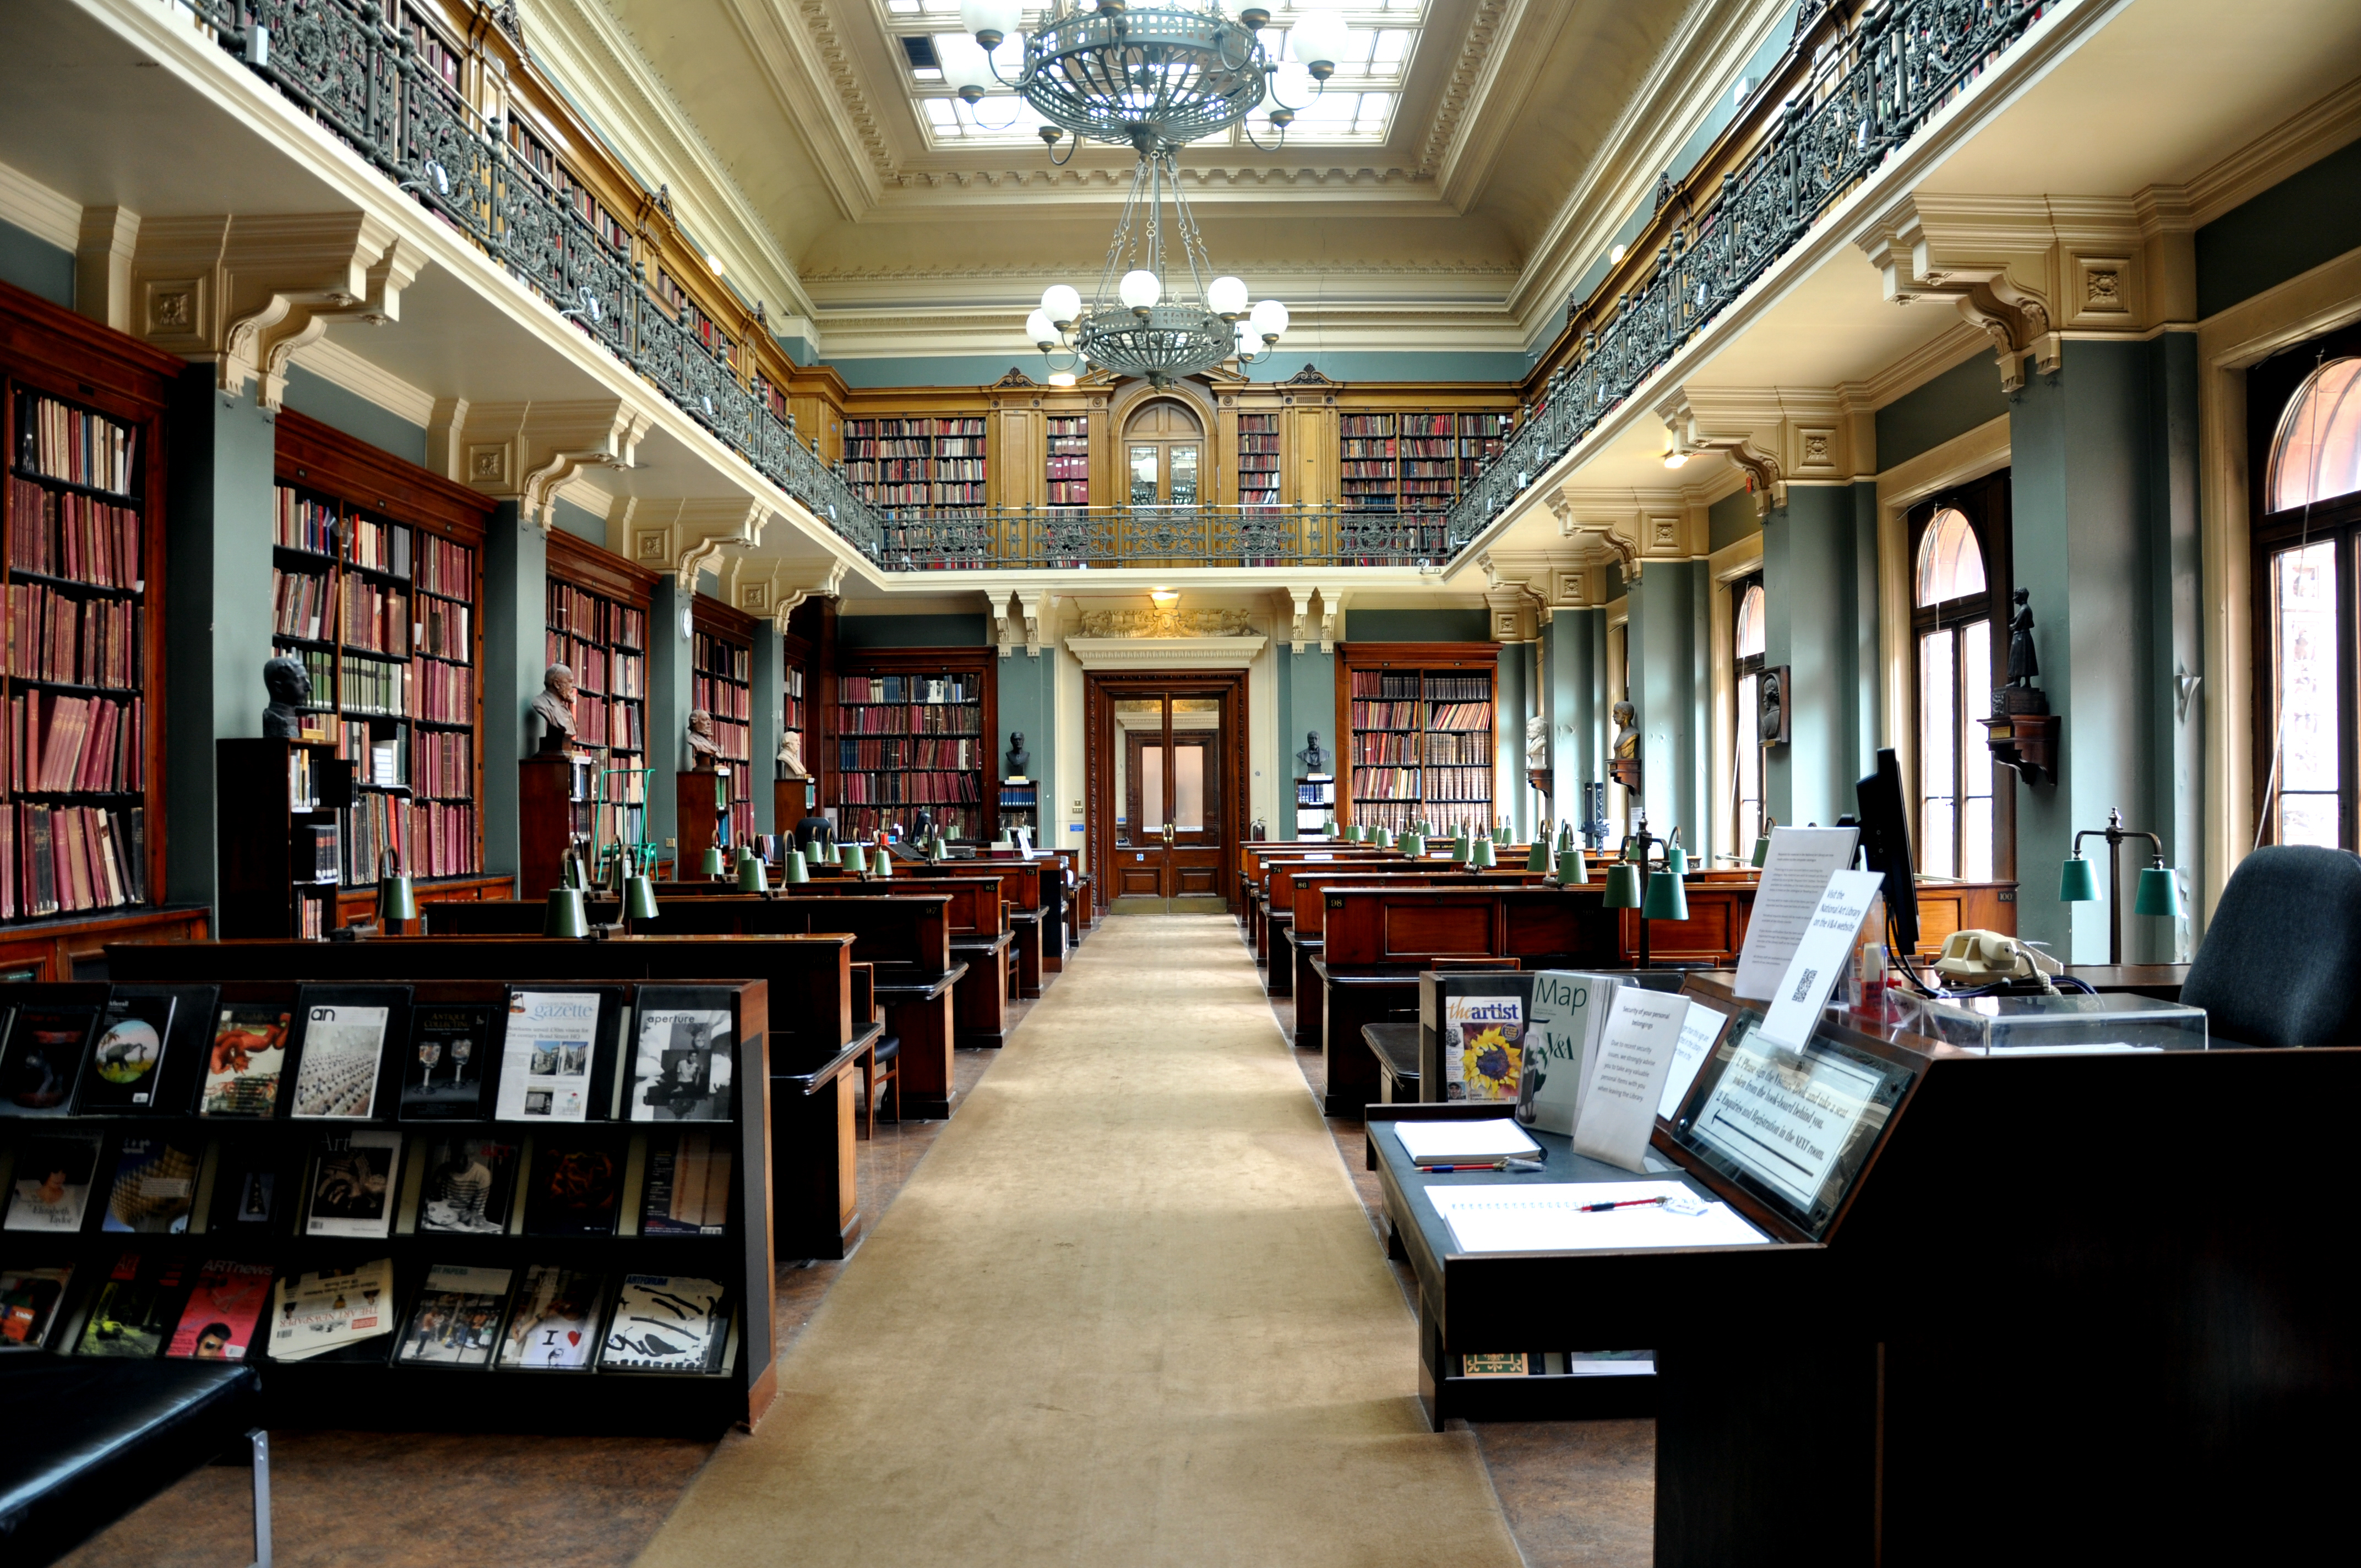 Библиотека. Национальная библиотека Великобритании книгохранилище. Библиотека британского музея в Лондоне. Британская библиотека (British Library). Читальный зал британского музея в Лондоне.